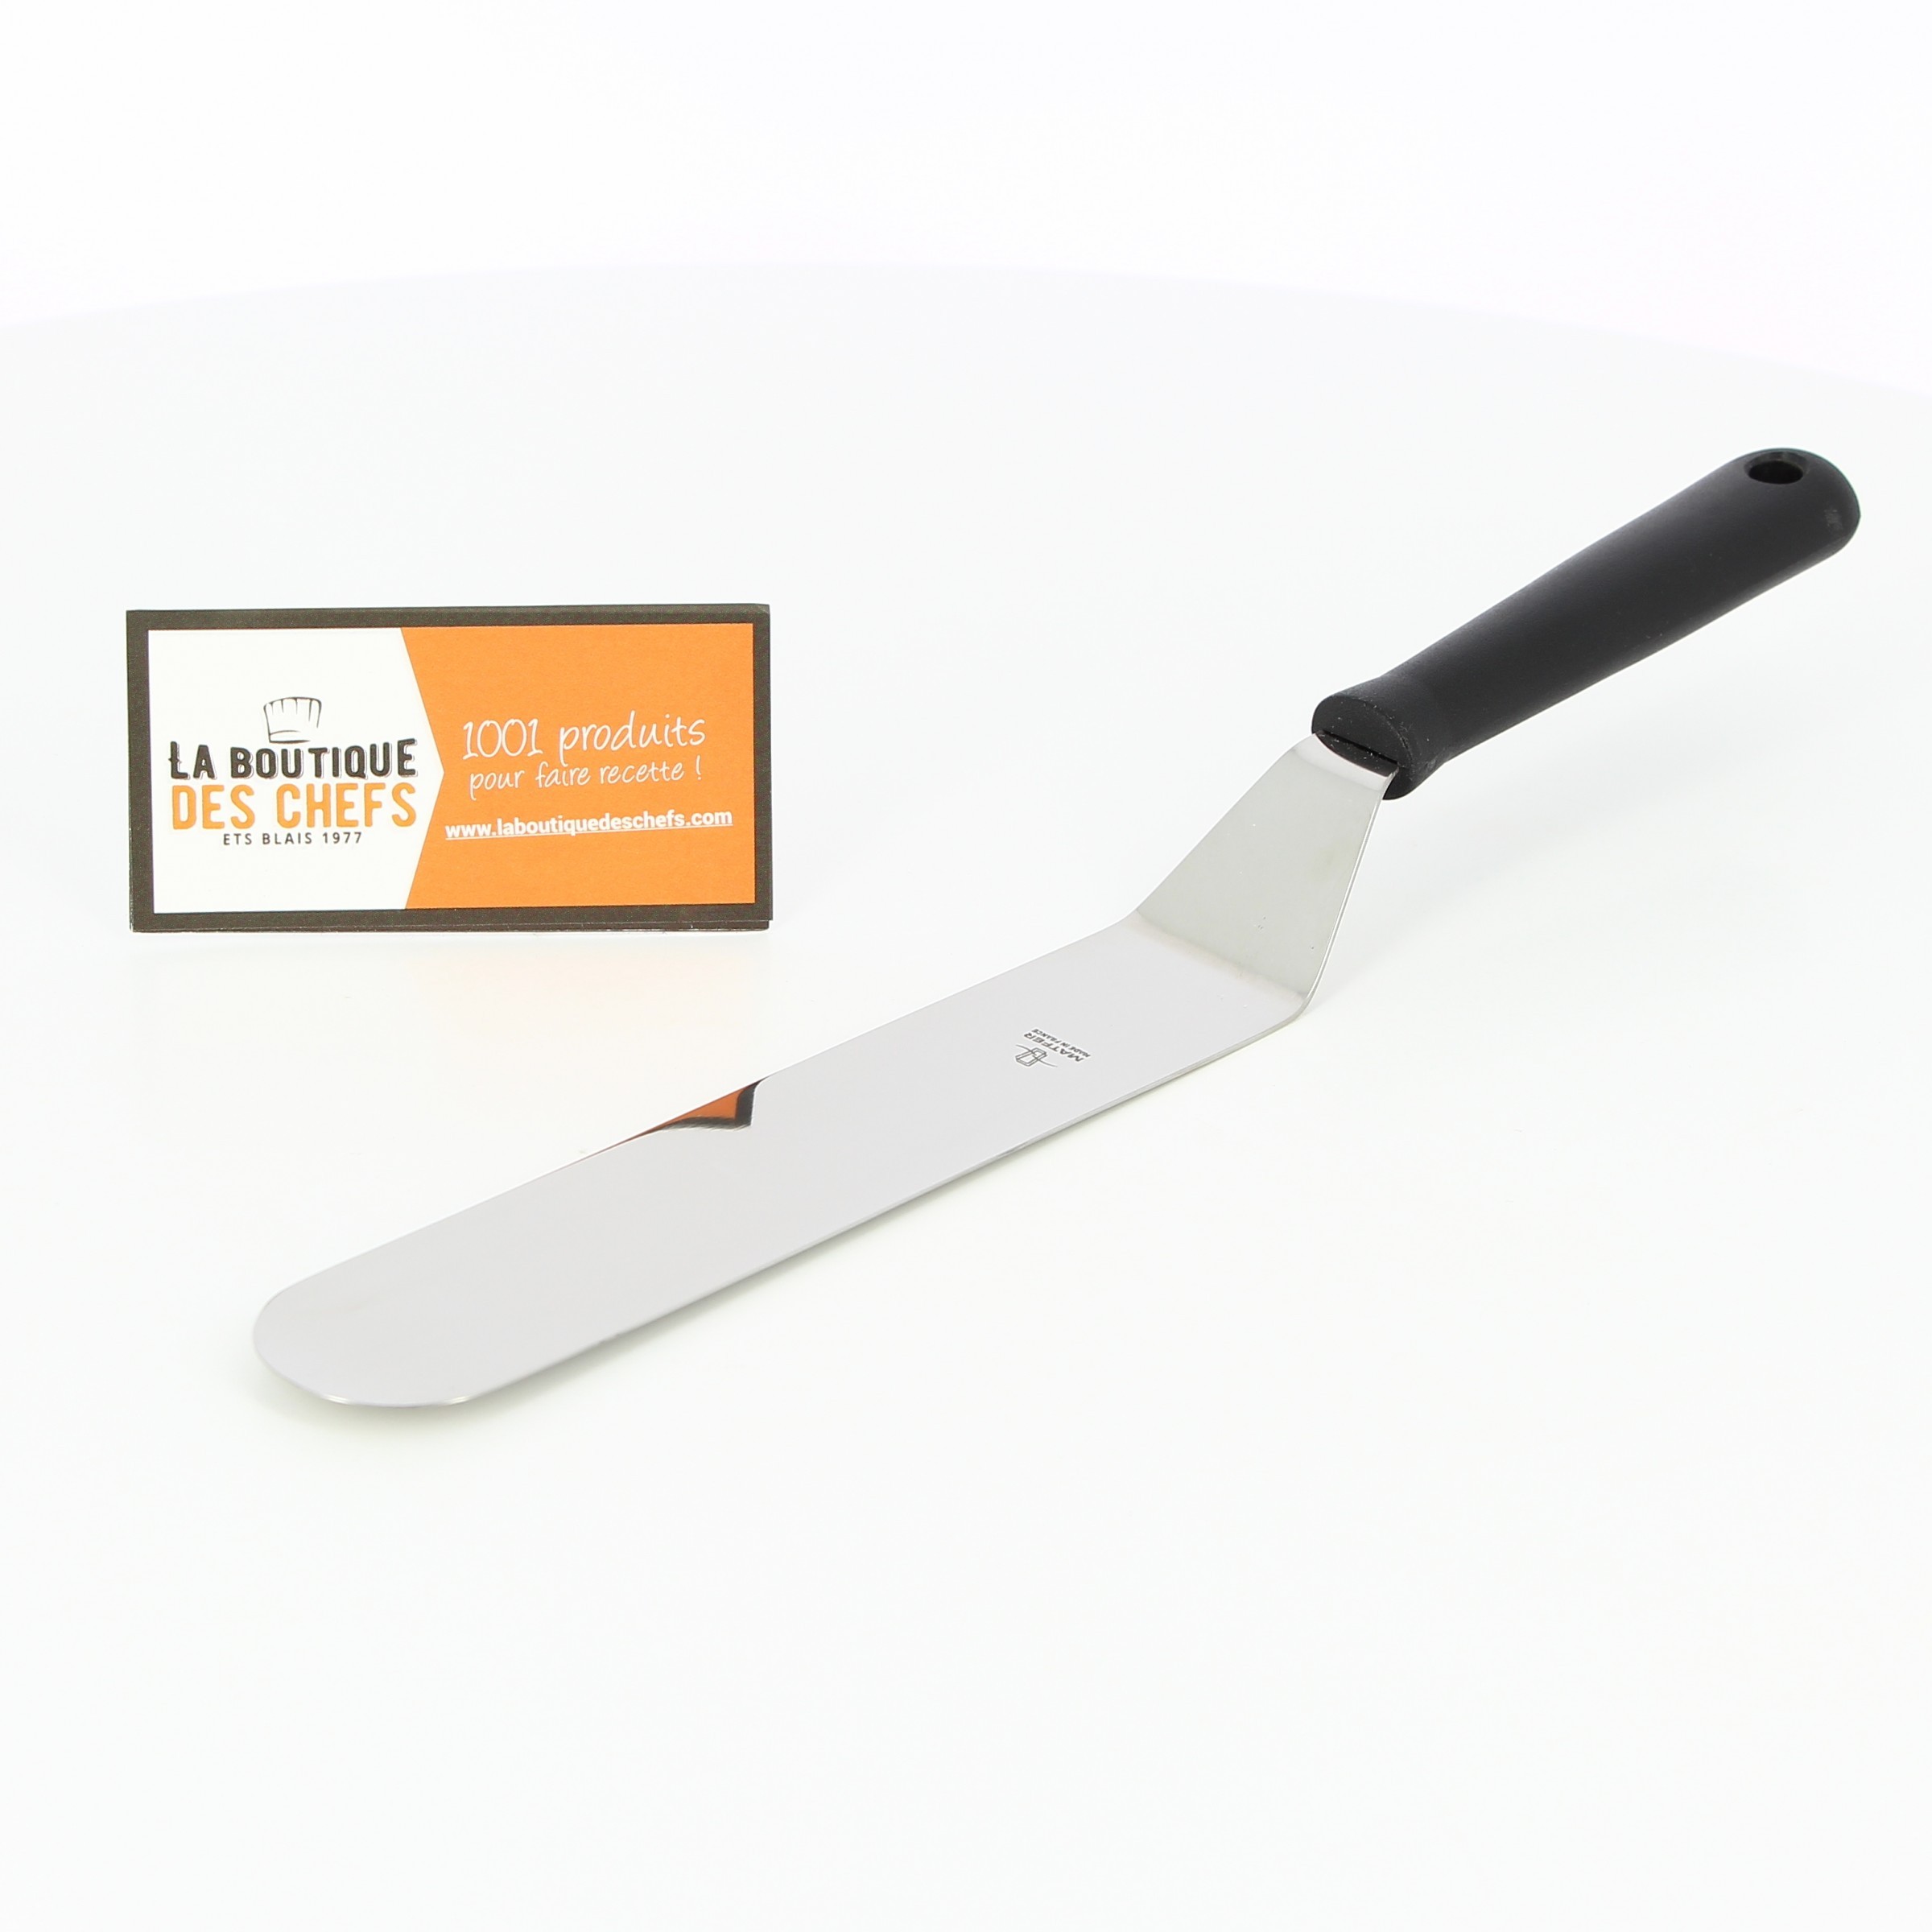 https://www.laboutiquedeschefs.com/media/images/products/w-2400-h-2400-zc-5-palette-ou-spatule-de-cuisine-coudee-professionnelle-en-inox-2-1563543447.jpg